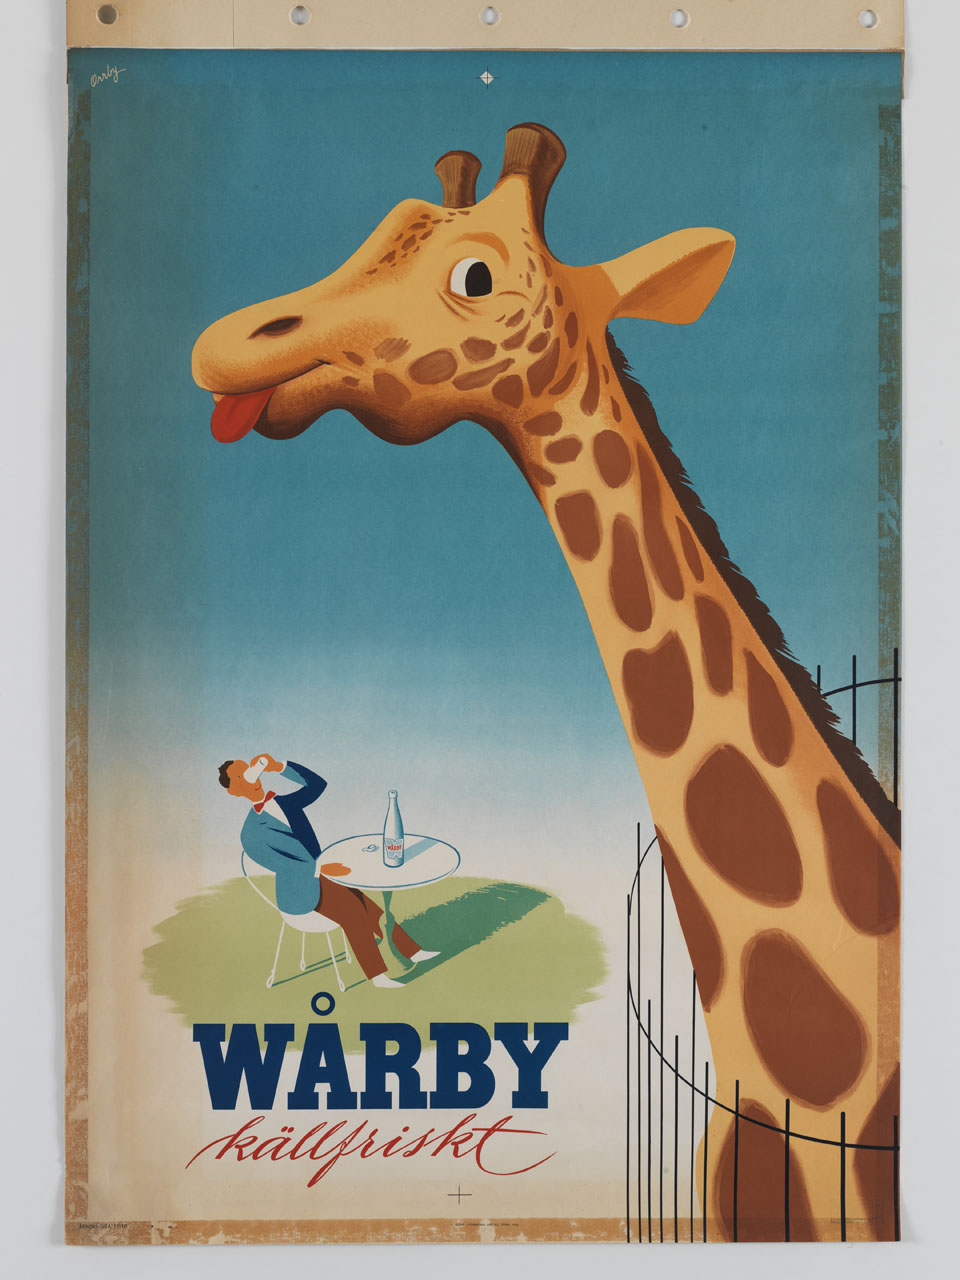 giraffa si lecca i baffi davanti a un uomo che sorseggia una bevanda (manifesto) di Orrby Gunnar (sec. XX)